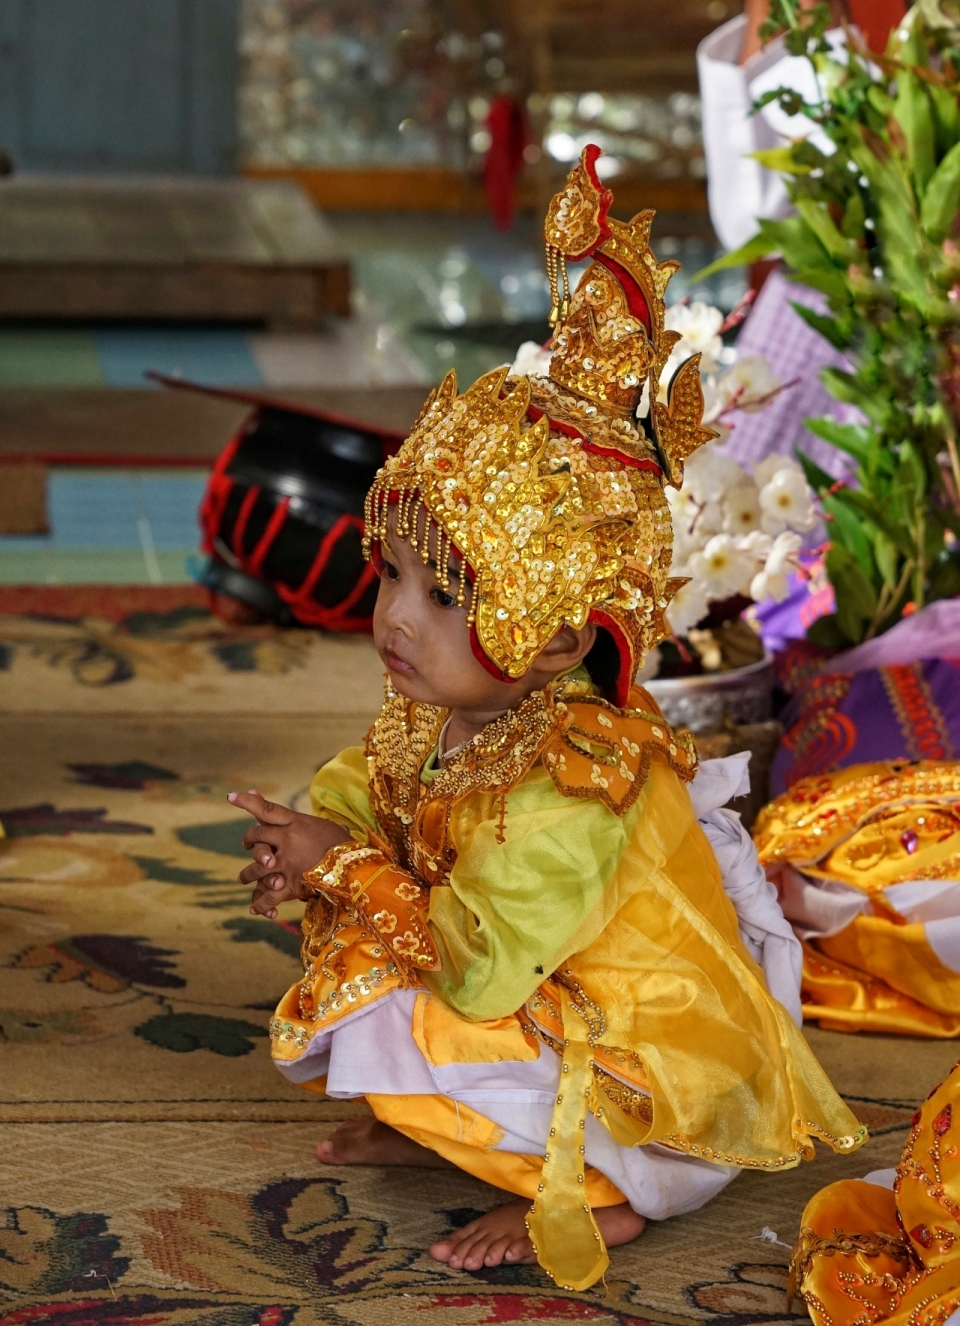 缅甸仰光穿佛教仪式服装的儿童